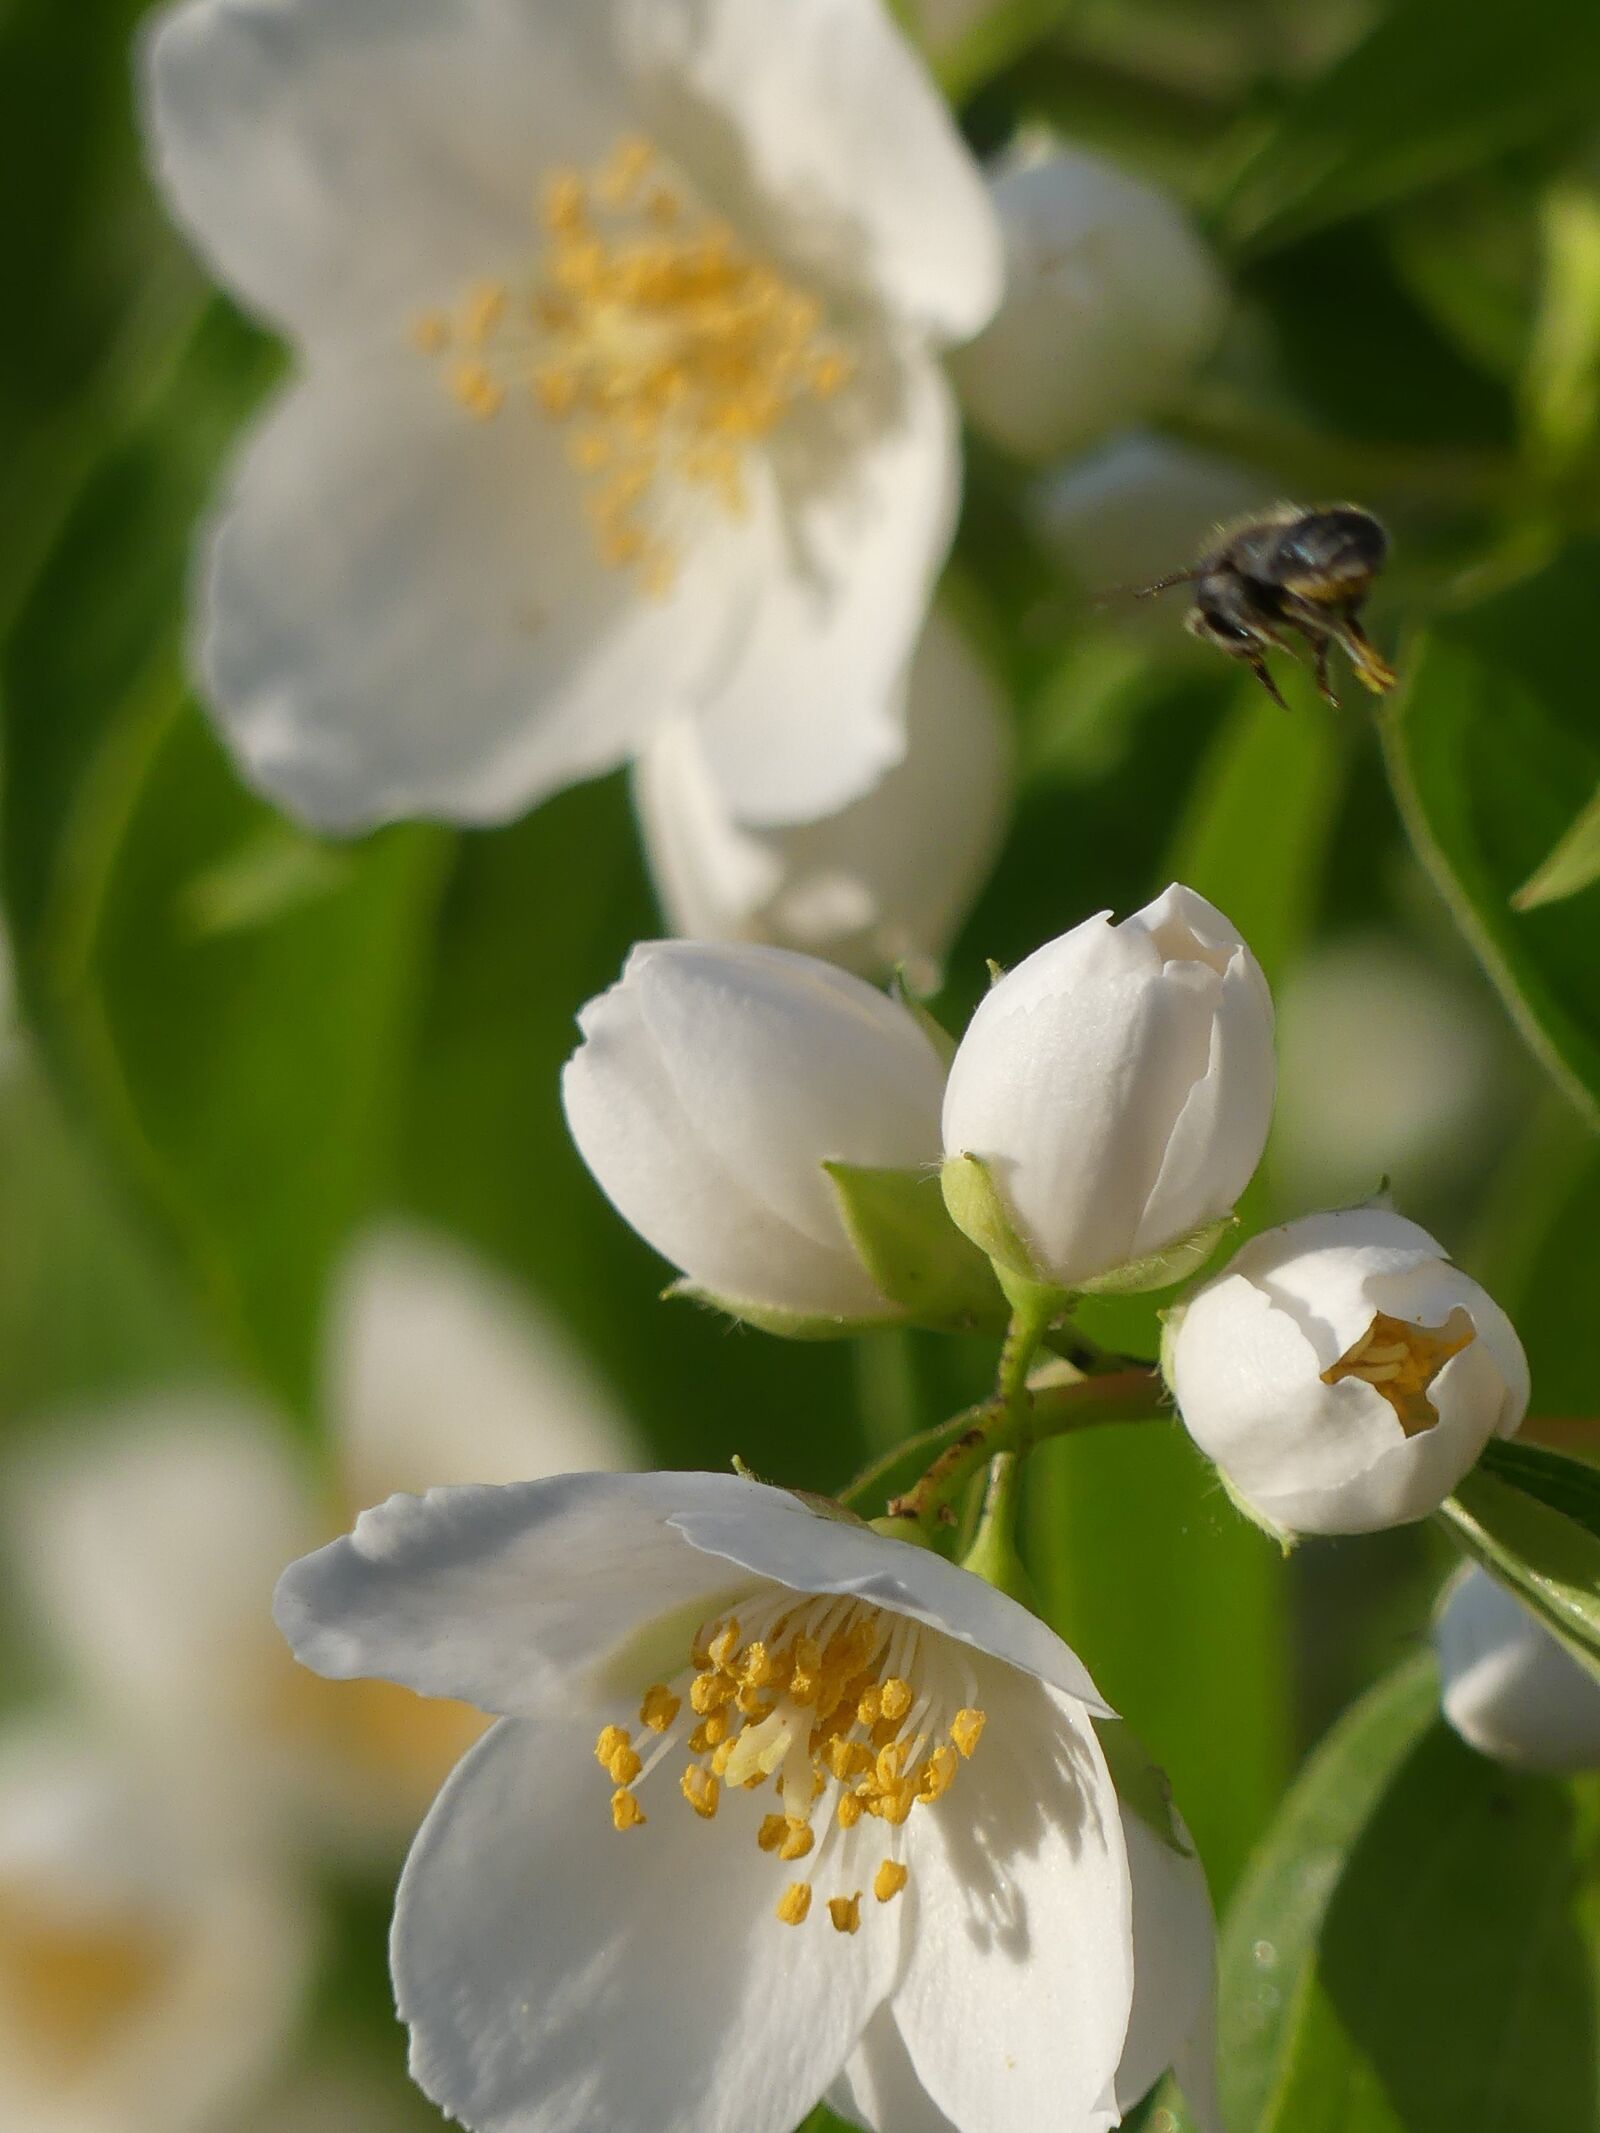 Panasonic DMC-FZ330 sample photo. Flower, nature, honeybee photography